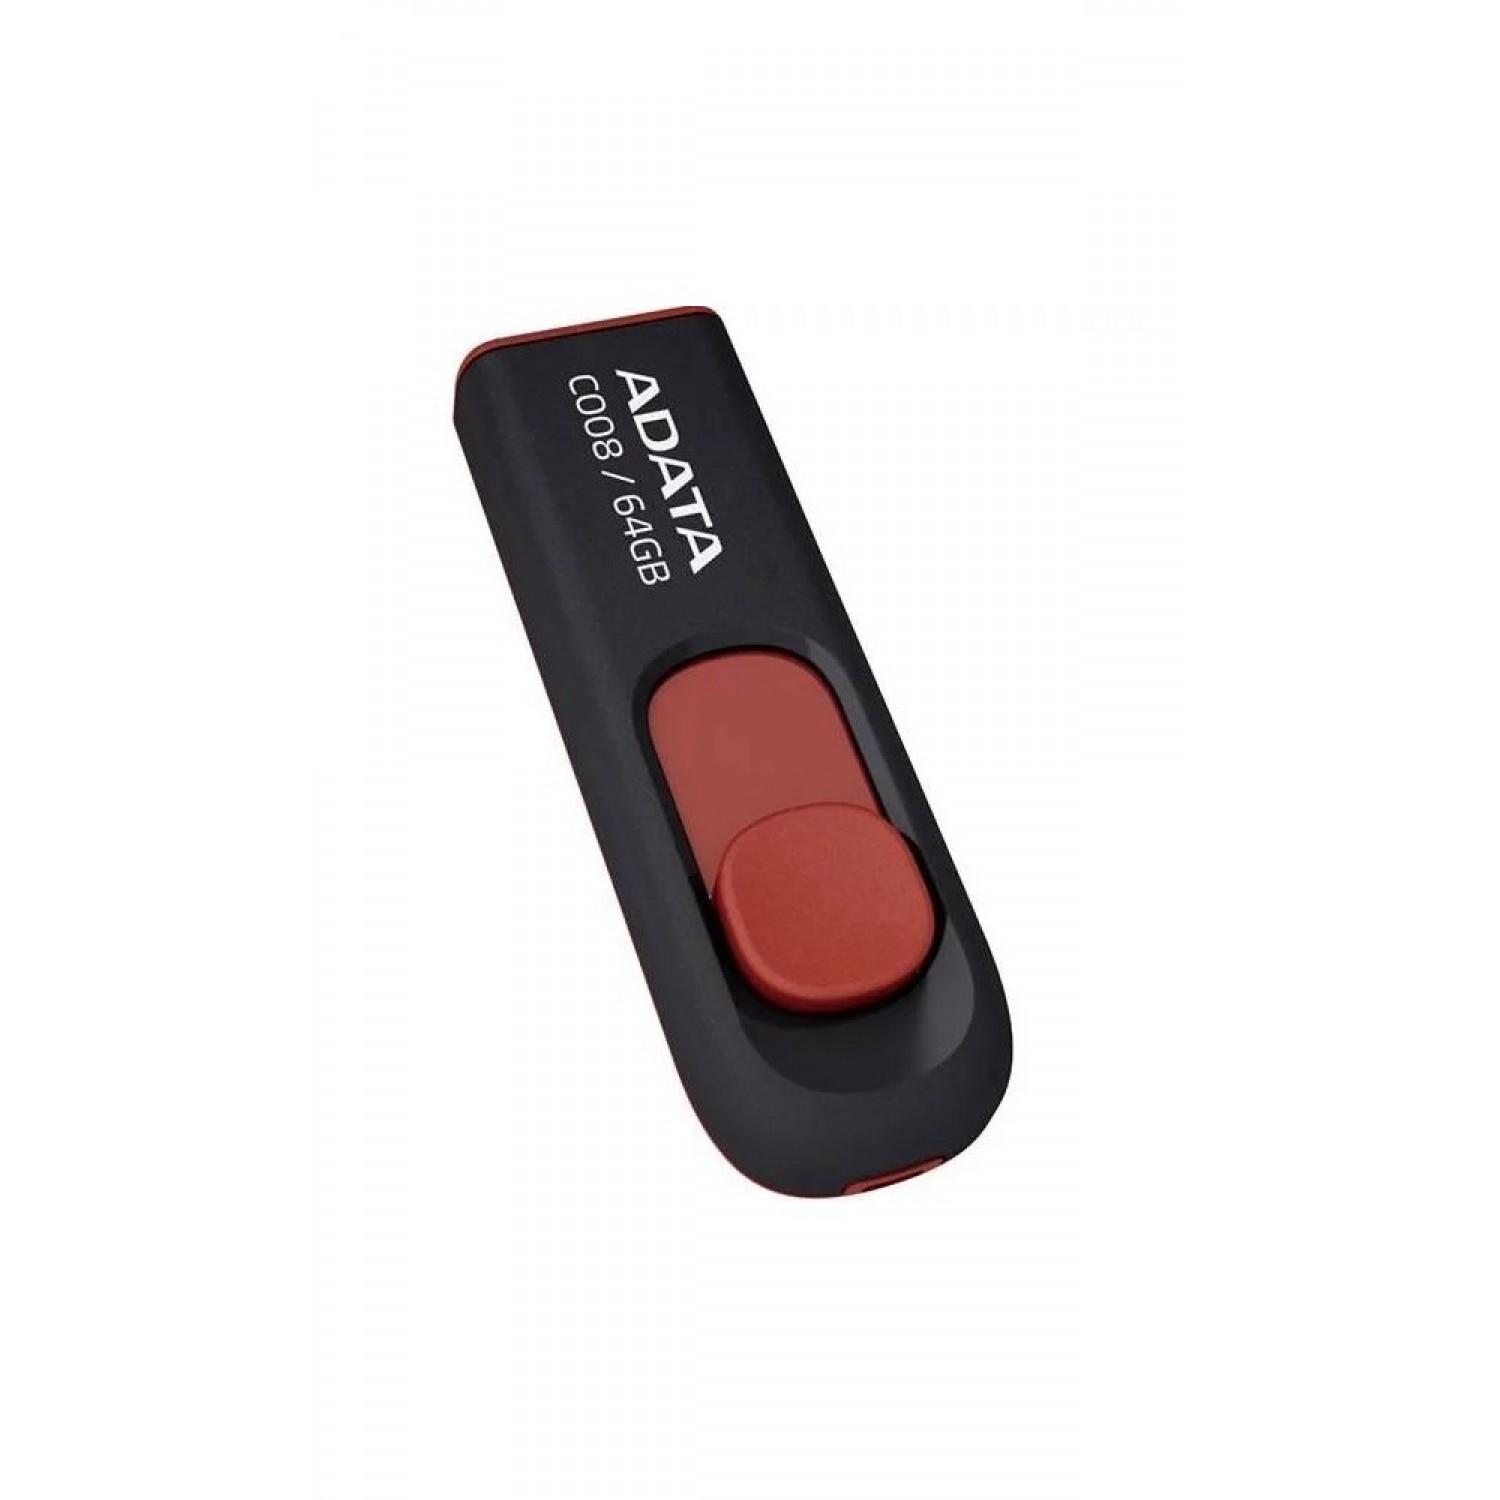 فلش مموری ADATA C008 - 64GB - Black/Red-1